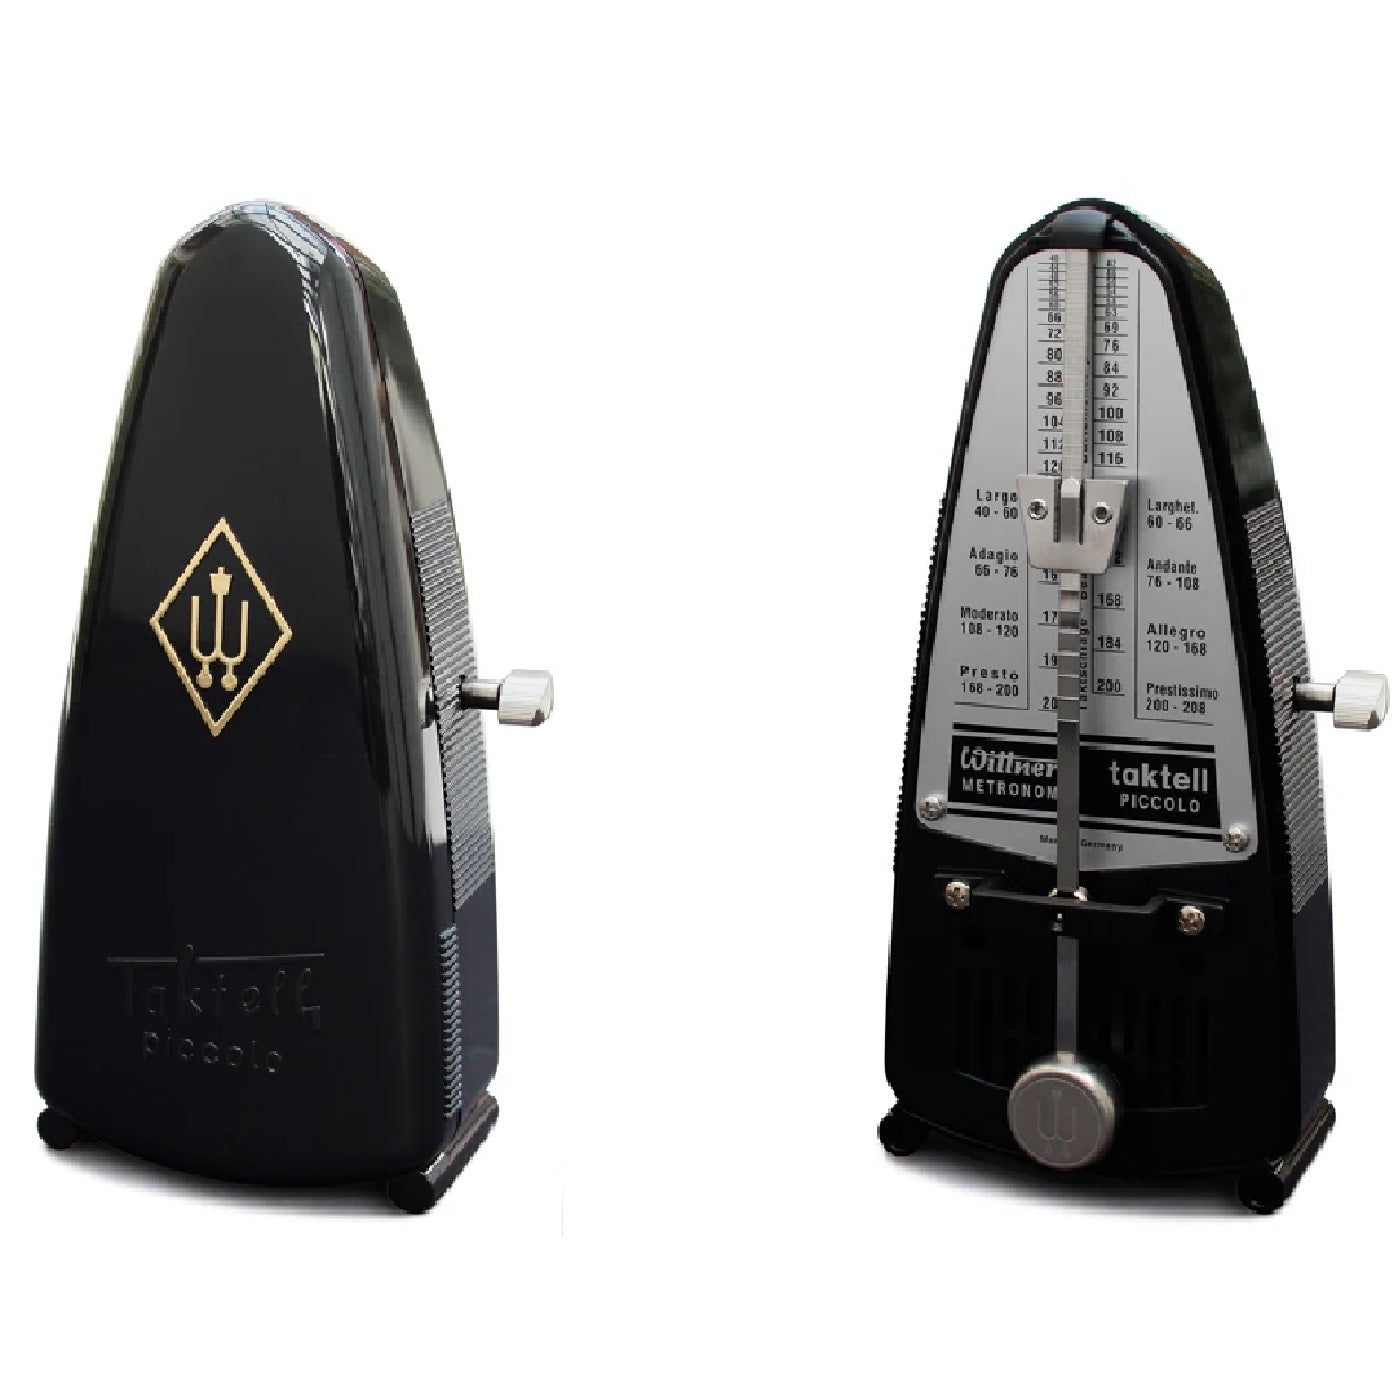 Wittner Taktell 836 Piccolo Metronome – Black – Evergreen Workshop